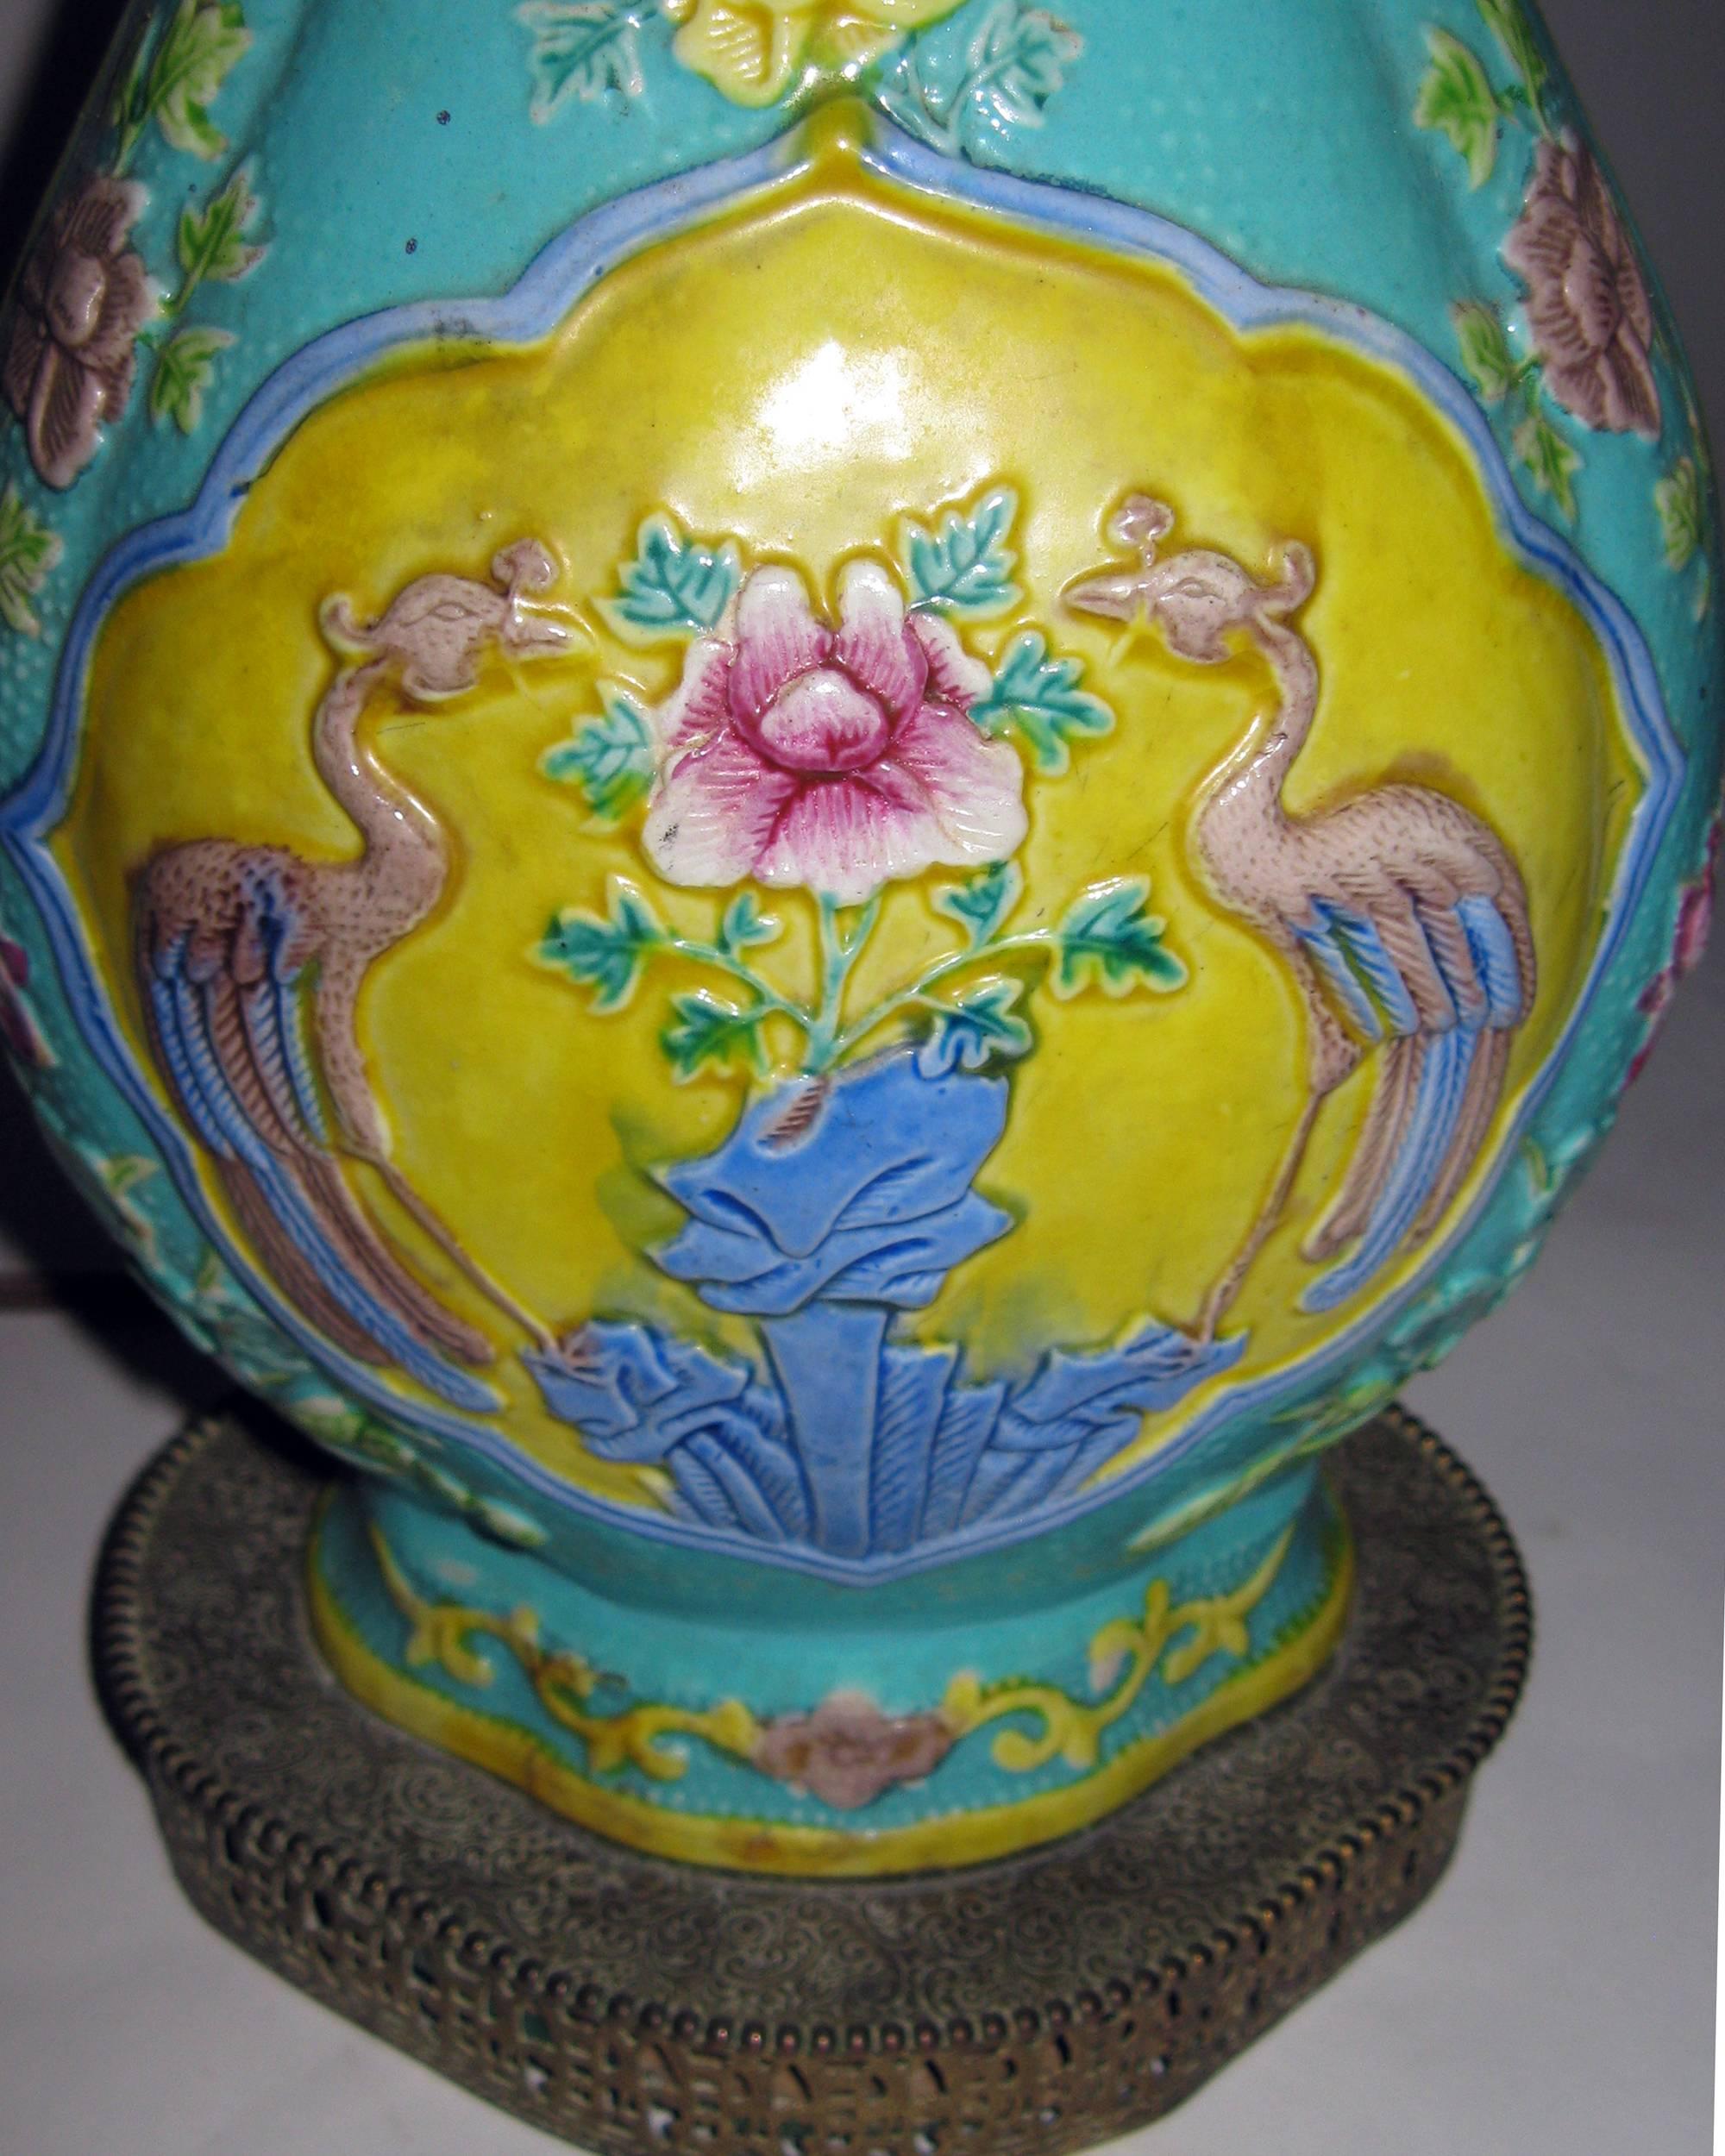 Dans la culture chinoise, les grues sont les symboles de la longévité. Ce vase en céramique a été transformé en lampe de table et présente une paire de grues avec des fleurs sur une base décorative en laiton filigrané, de jolies couleurs pastel